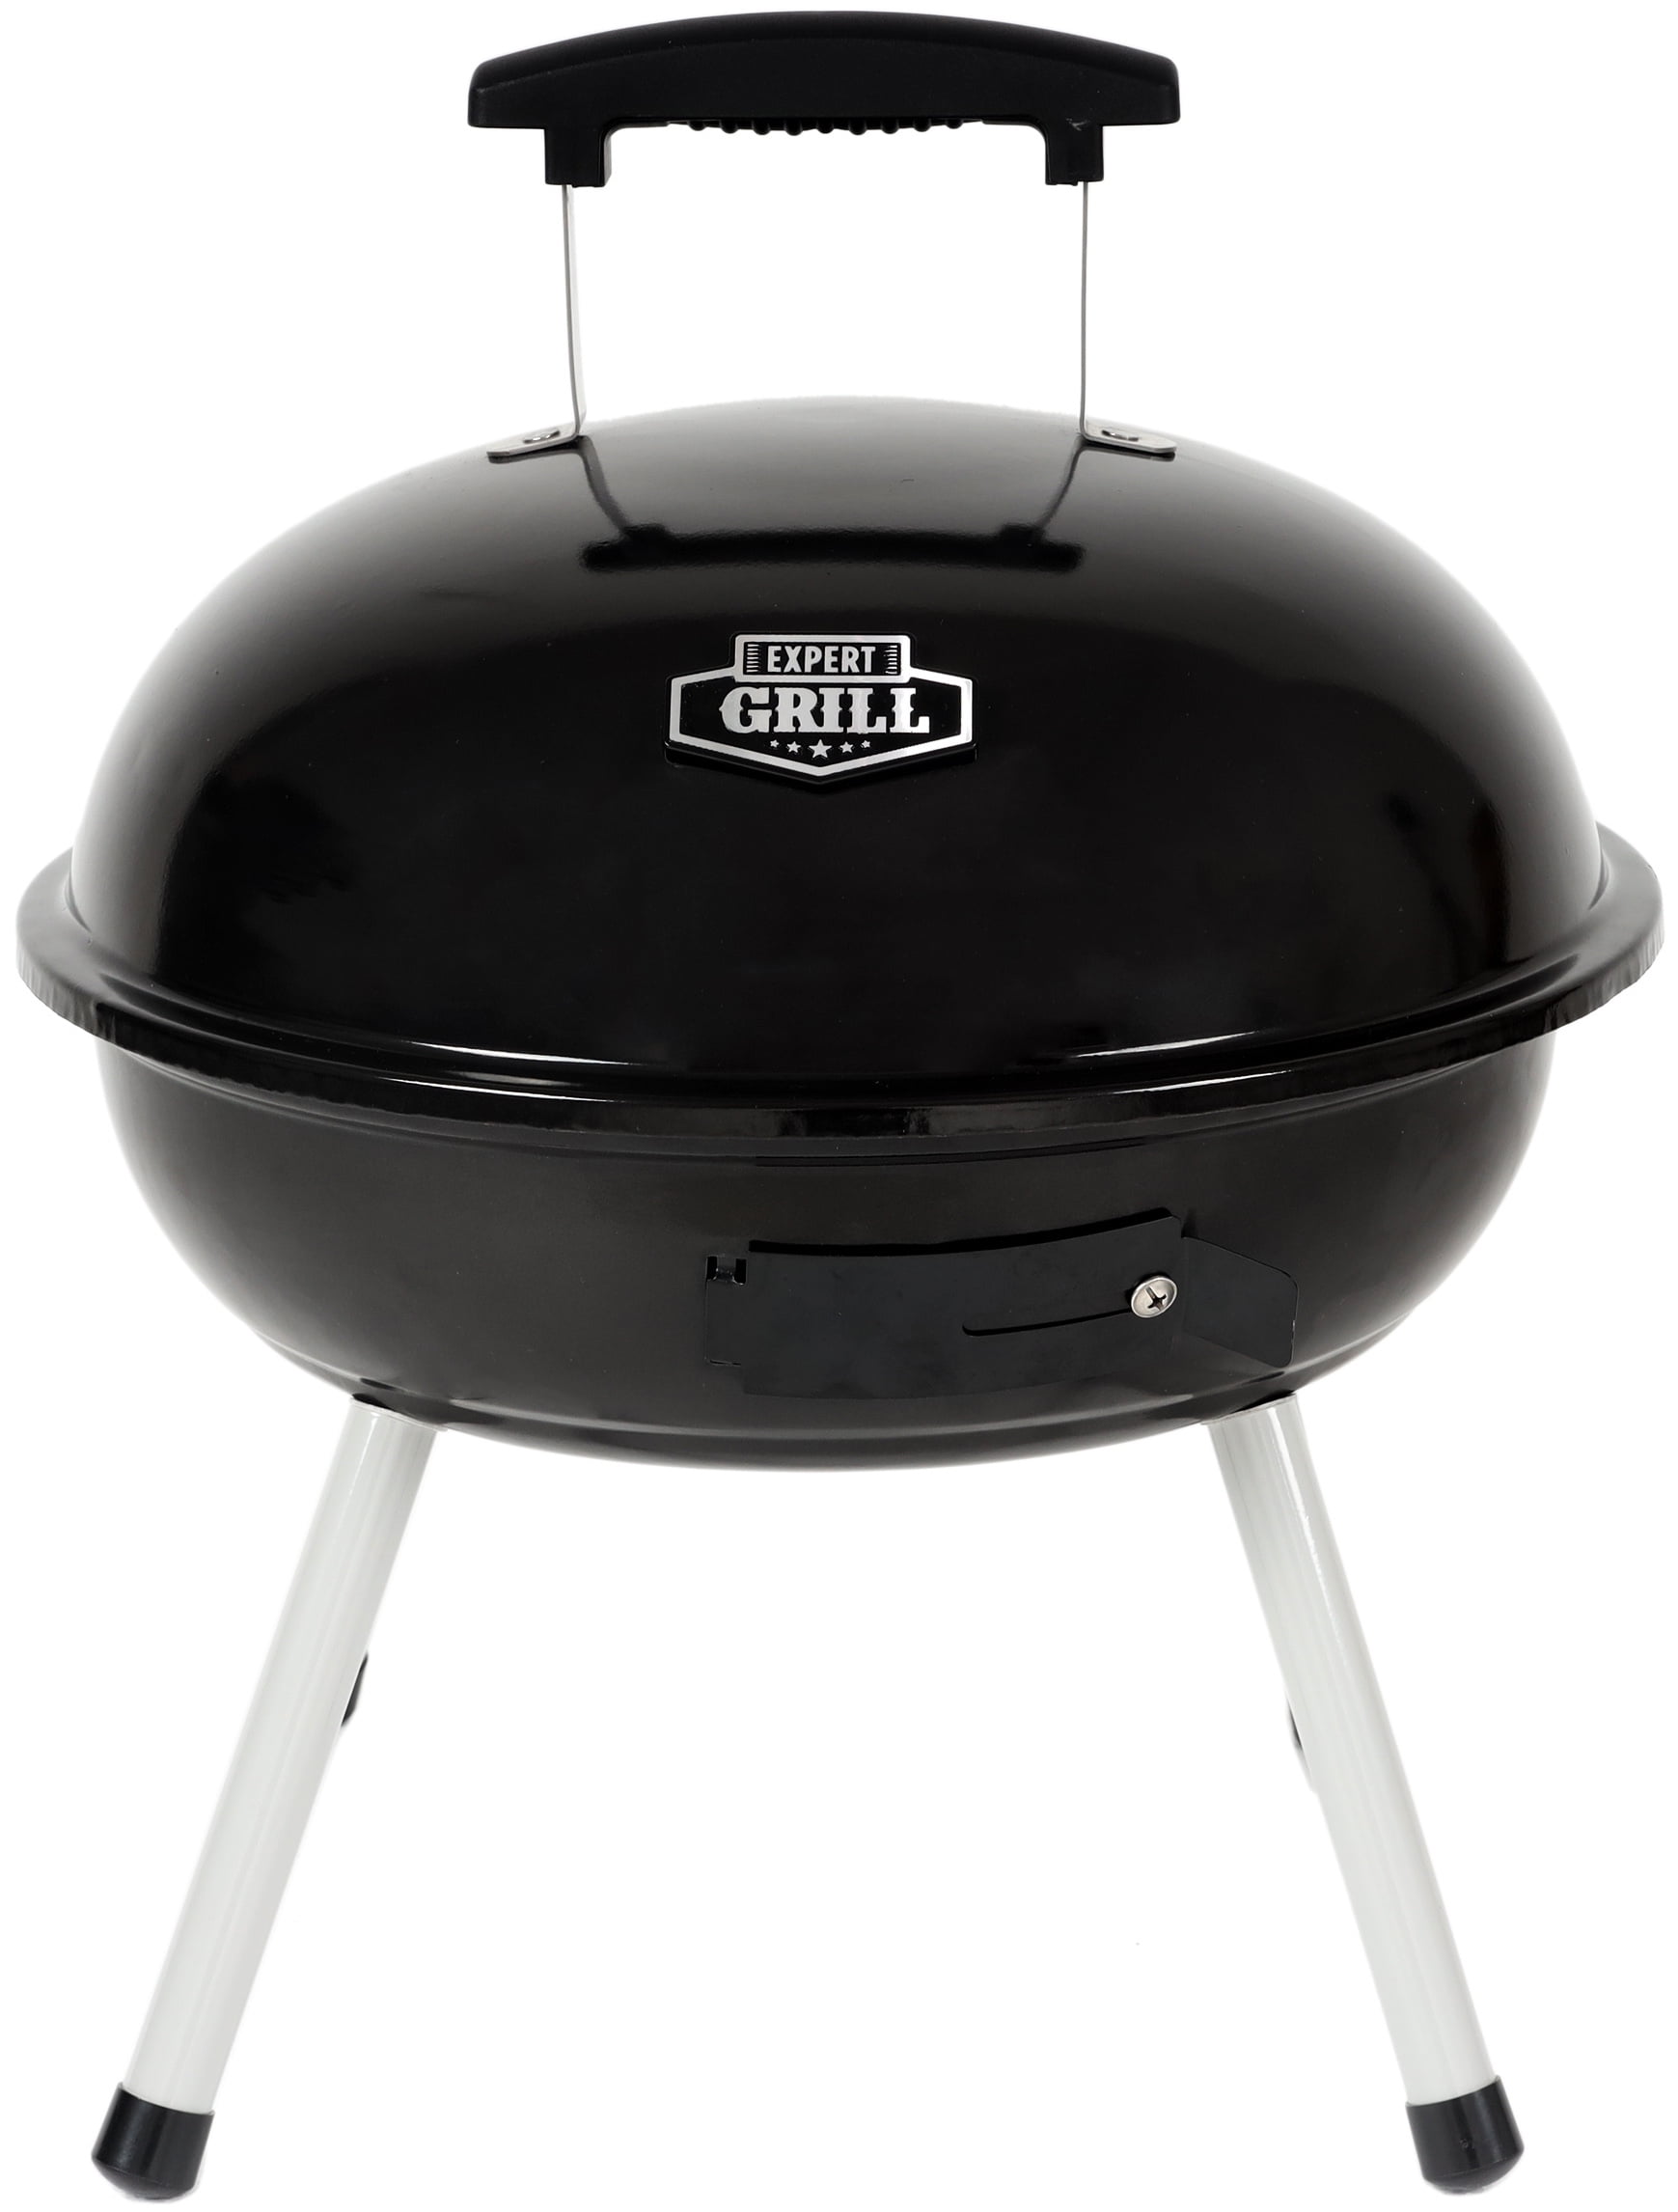 Expert Grill 14.5'' Portable Charcoal Grill, Black - Walmart.com